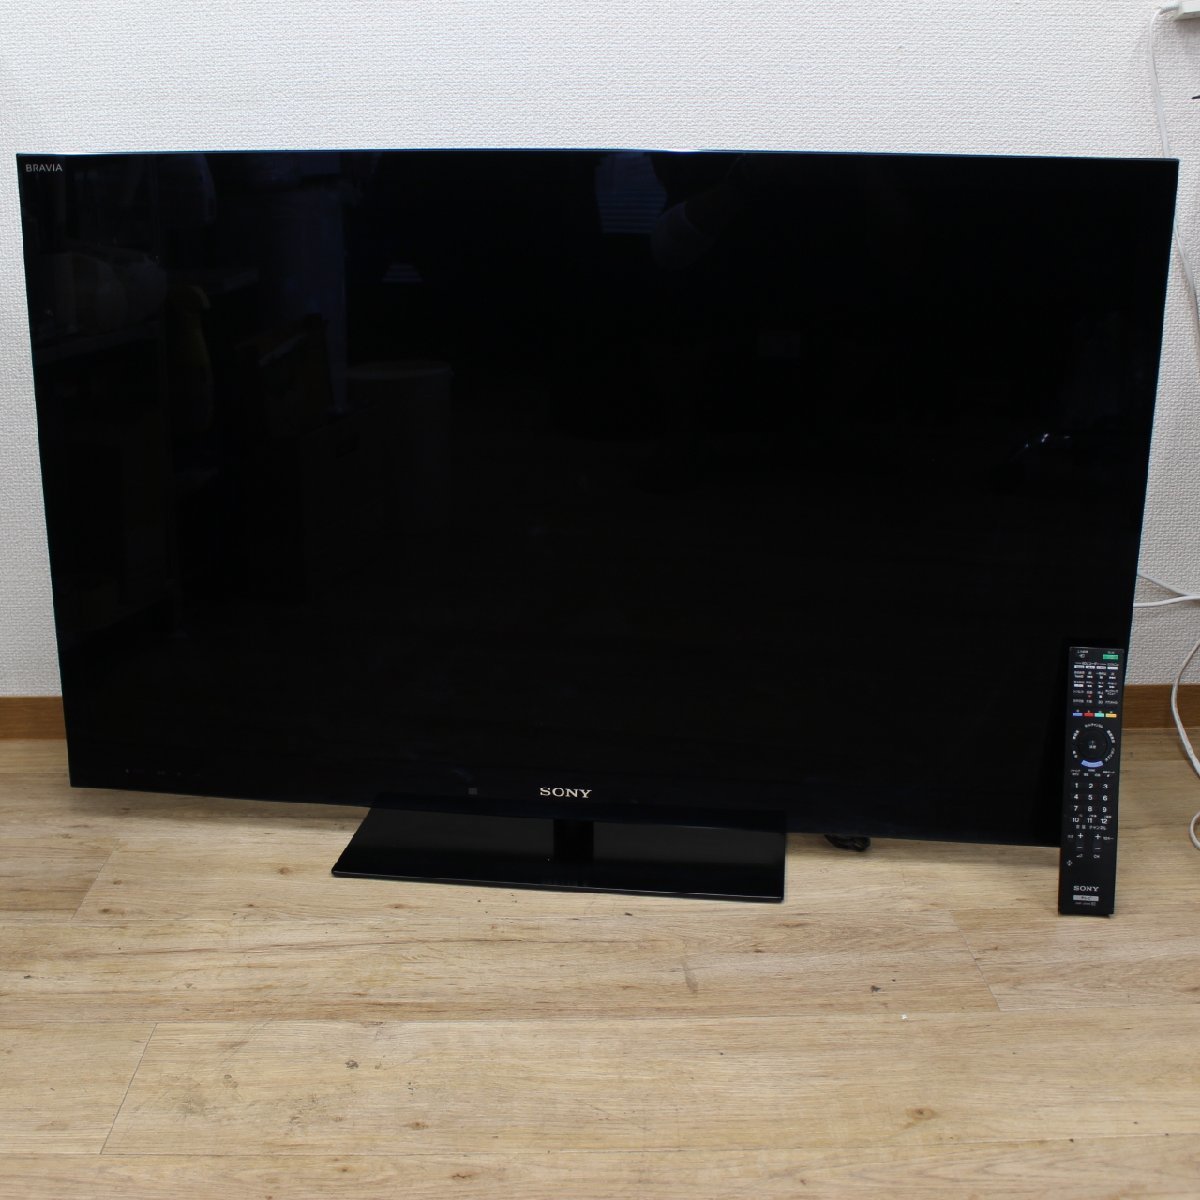 東京都渋谷区にて SONY  液晶テレビ KDL-46HX820 2011年製 を出張買取させて頂きました。